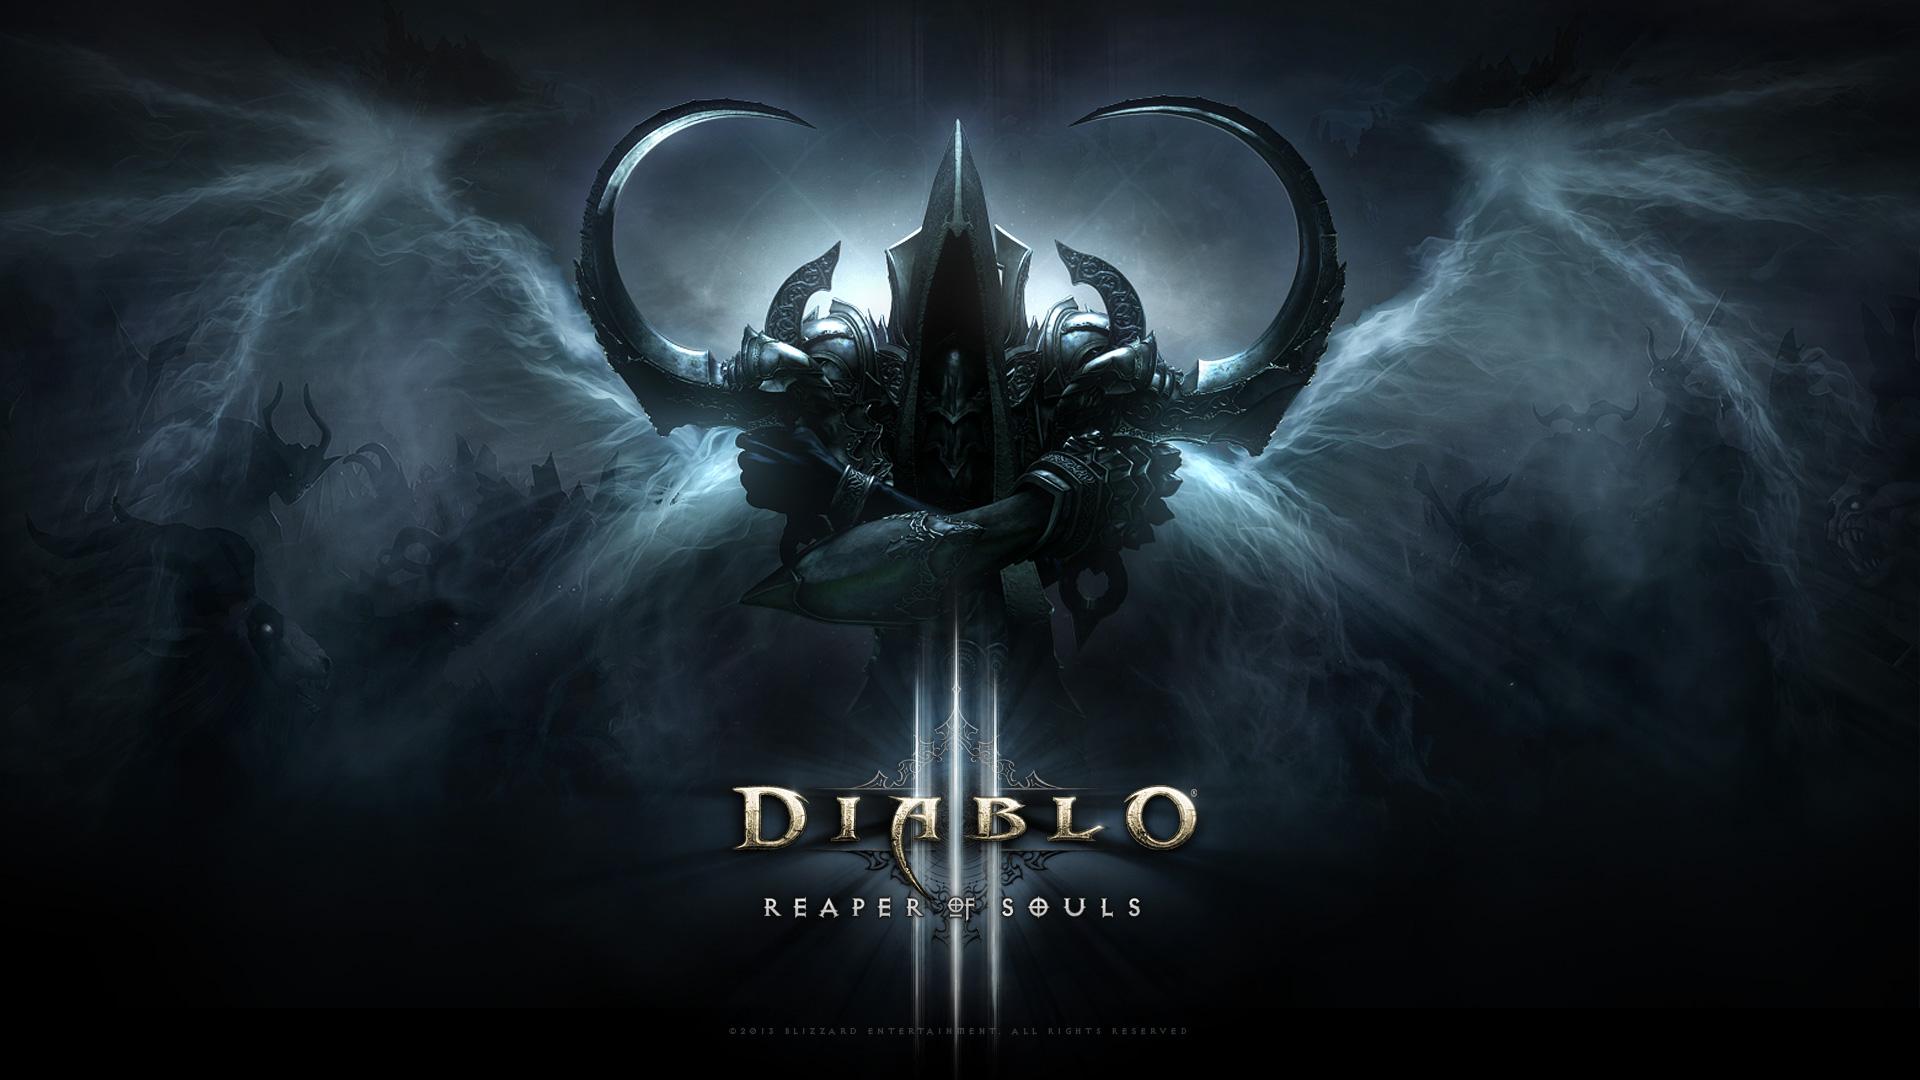 Diablo III - Reaper of Souls - Wallpaper Full HD - Malthael